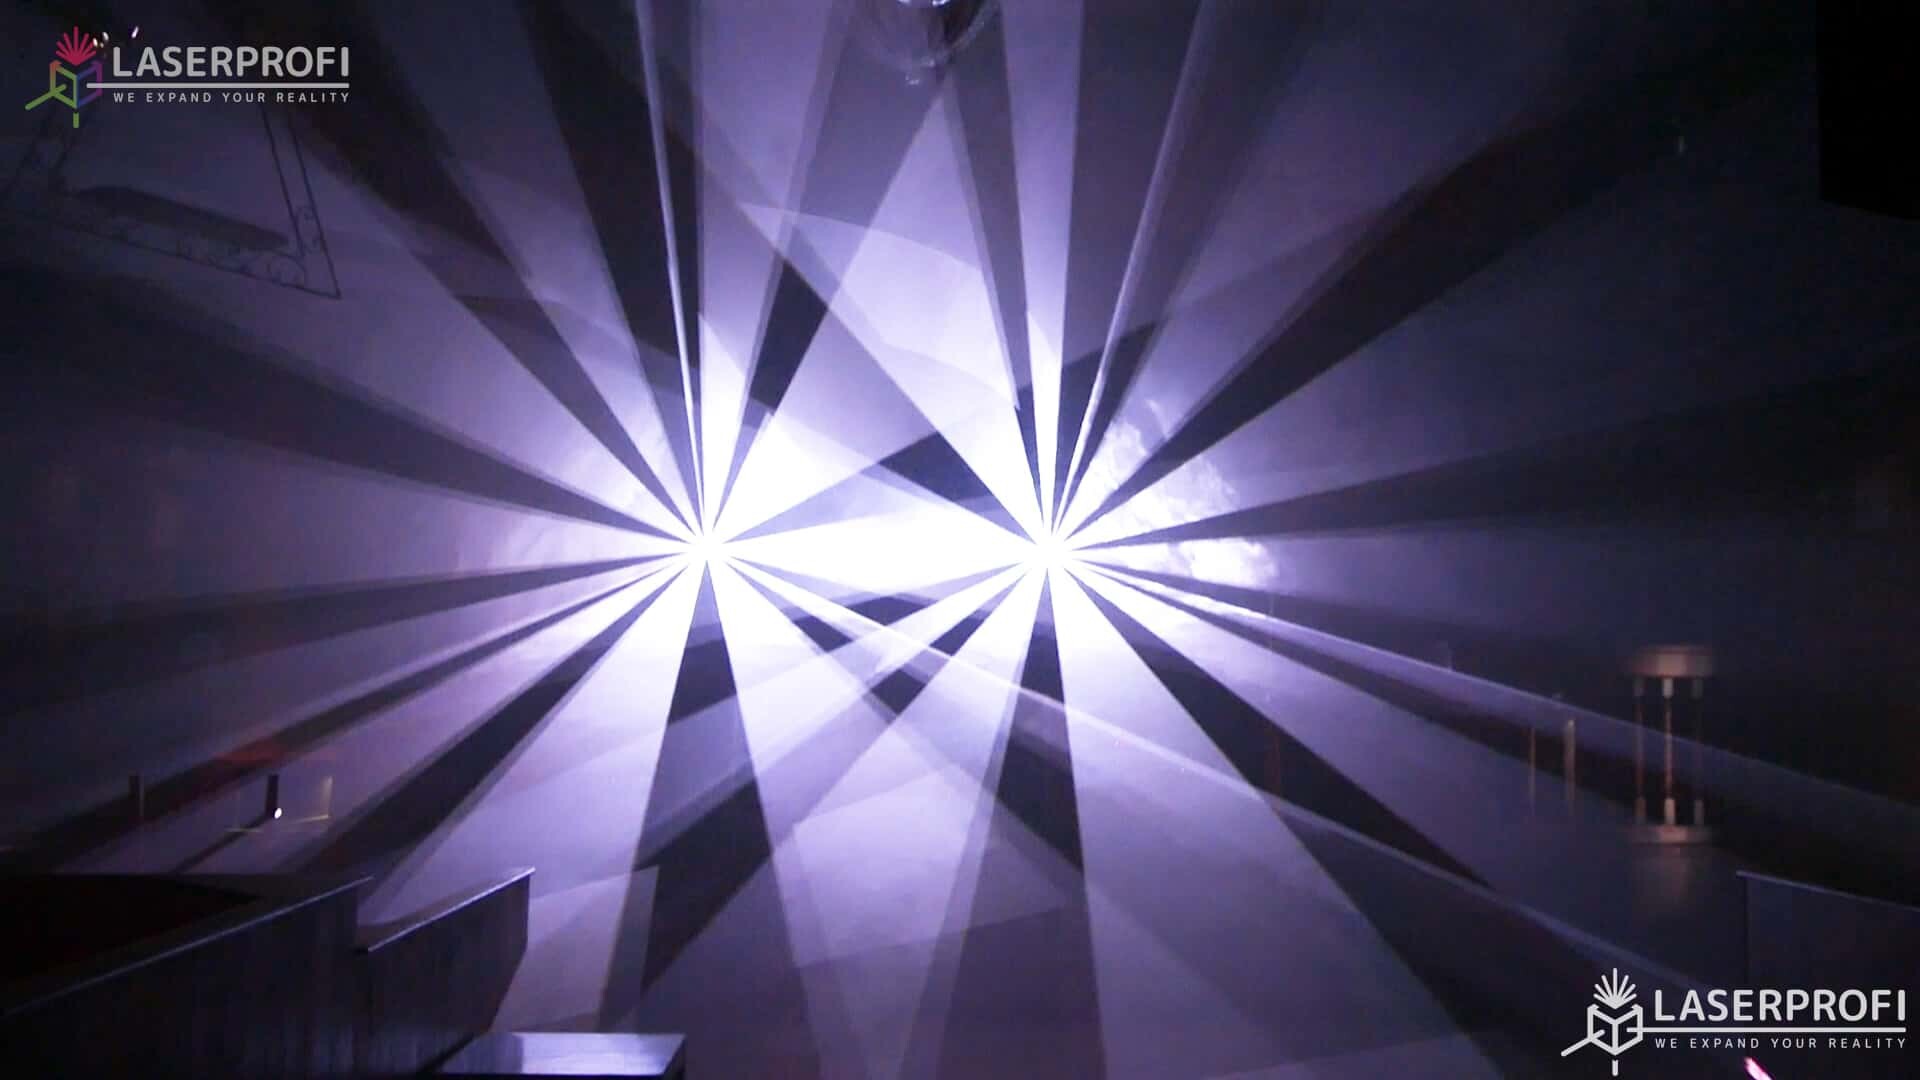 Pokaz laserowy przestrzenny - białe wiązki laserowe